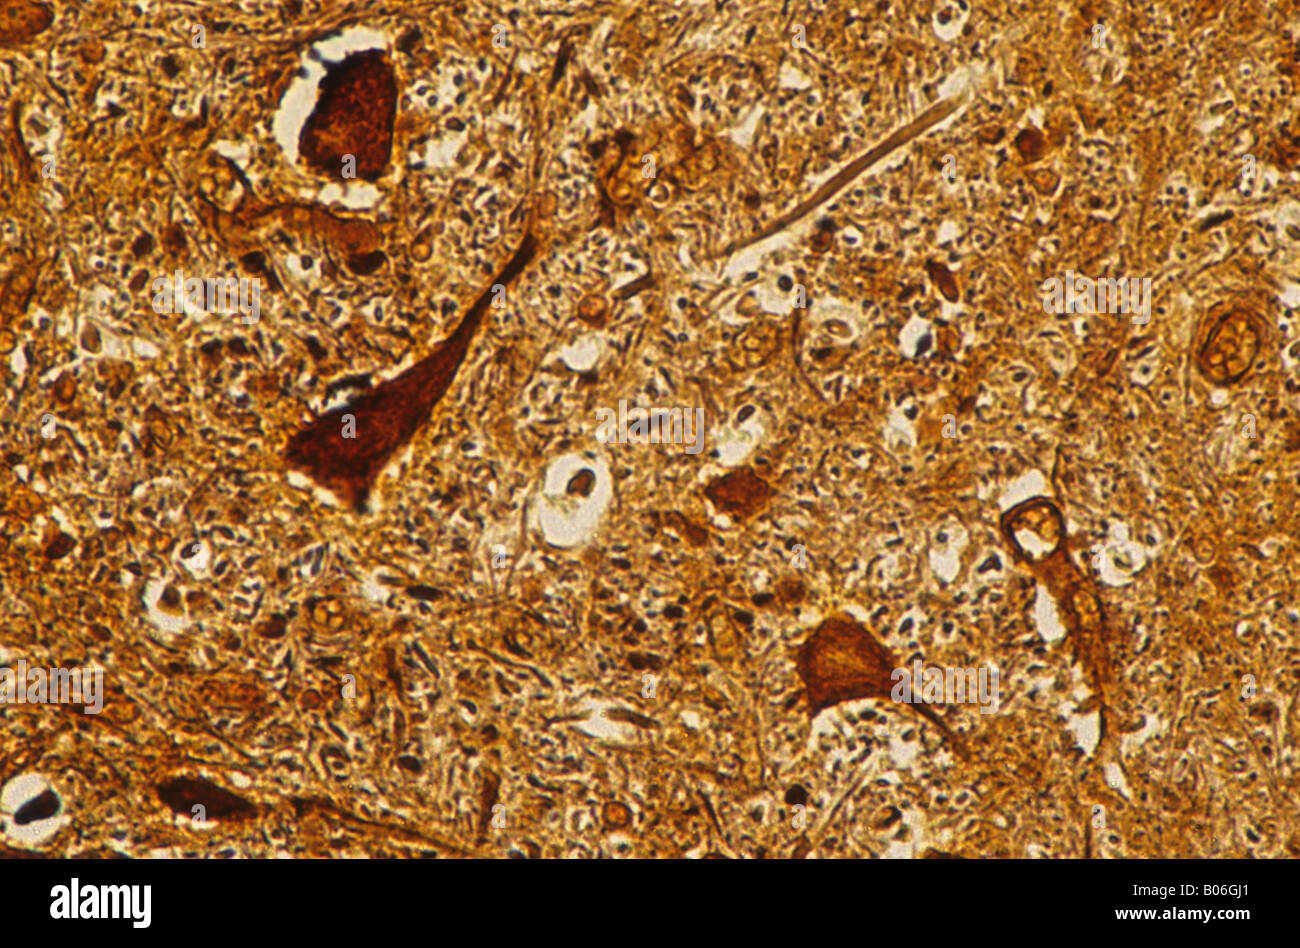 Neurone multipolaire du cordon médullaire tissu nerveux central 140x Banque D'Images